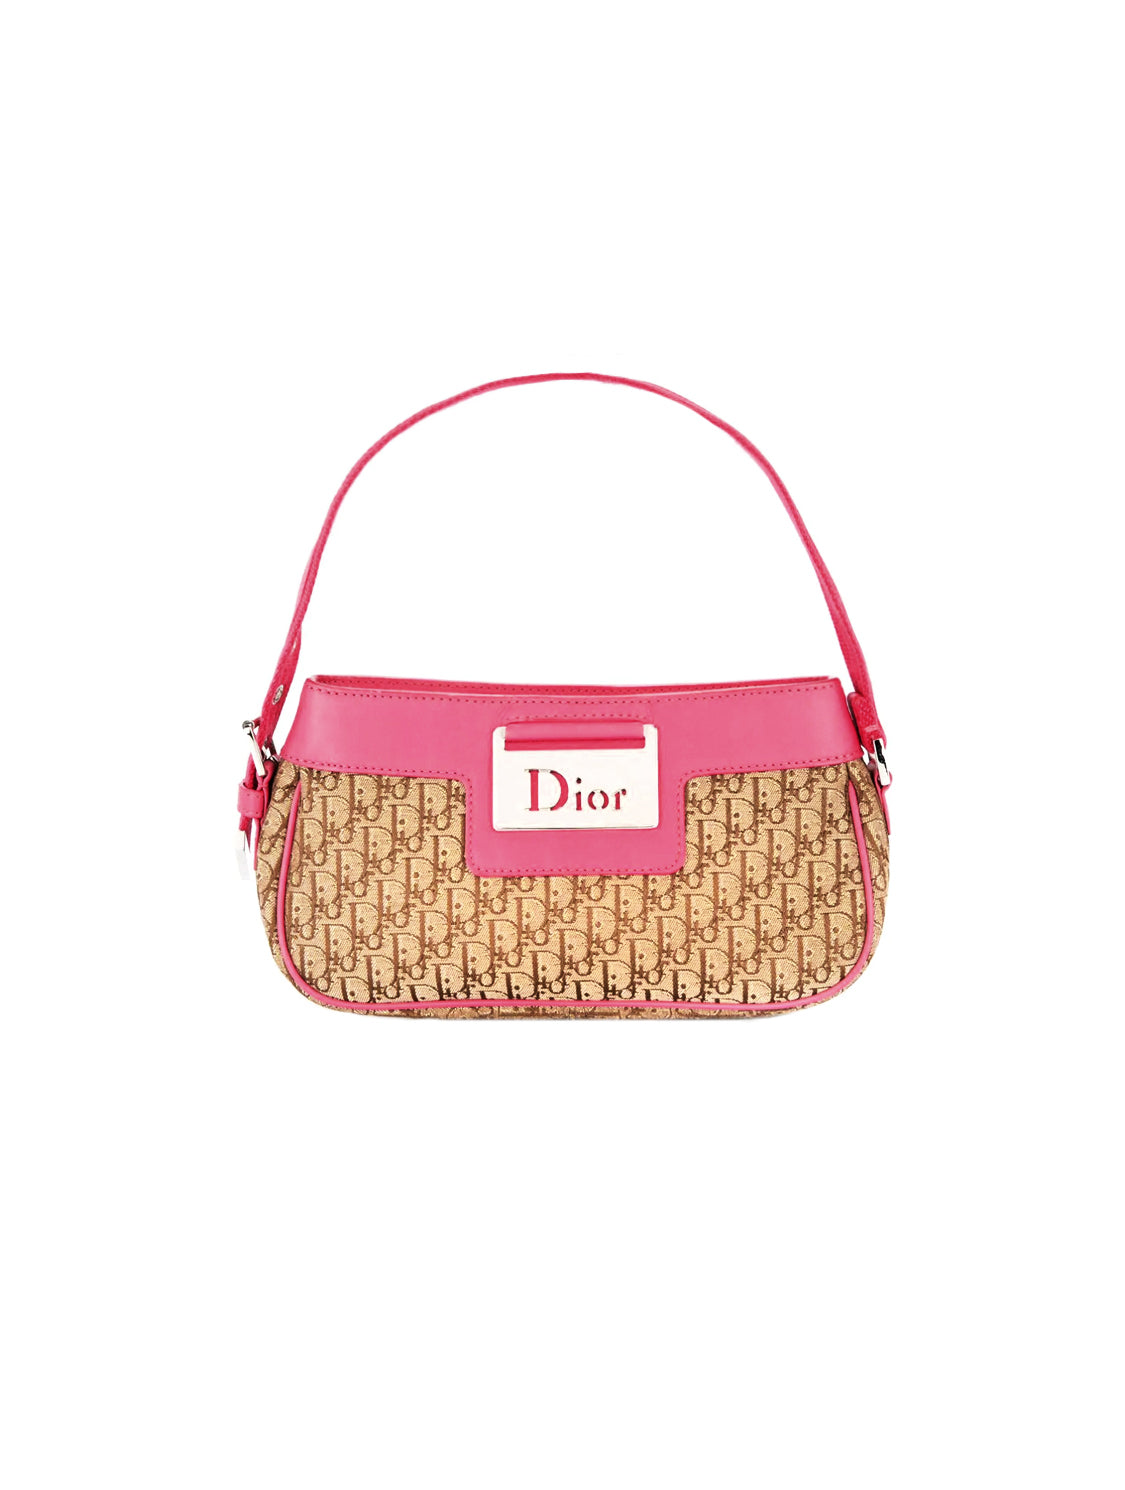 Christian Dior Pink Coated Canvas Crossbody Bag Trotter Logo Monogram |  Tokyo Roses Vintage | Purses and bags, Pretty bags, Canvas crossbody bag